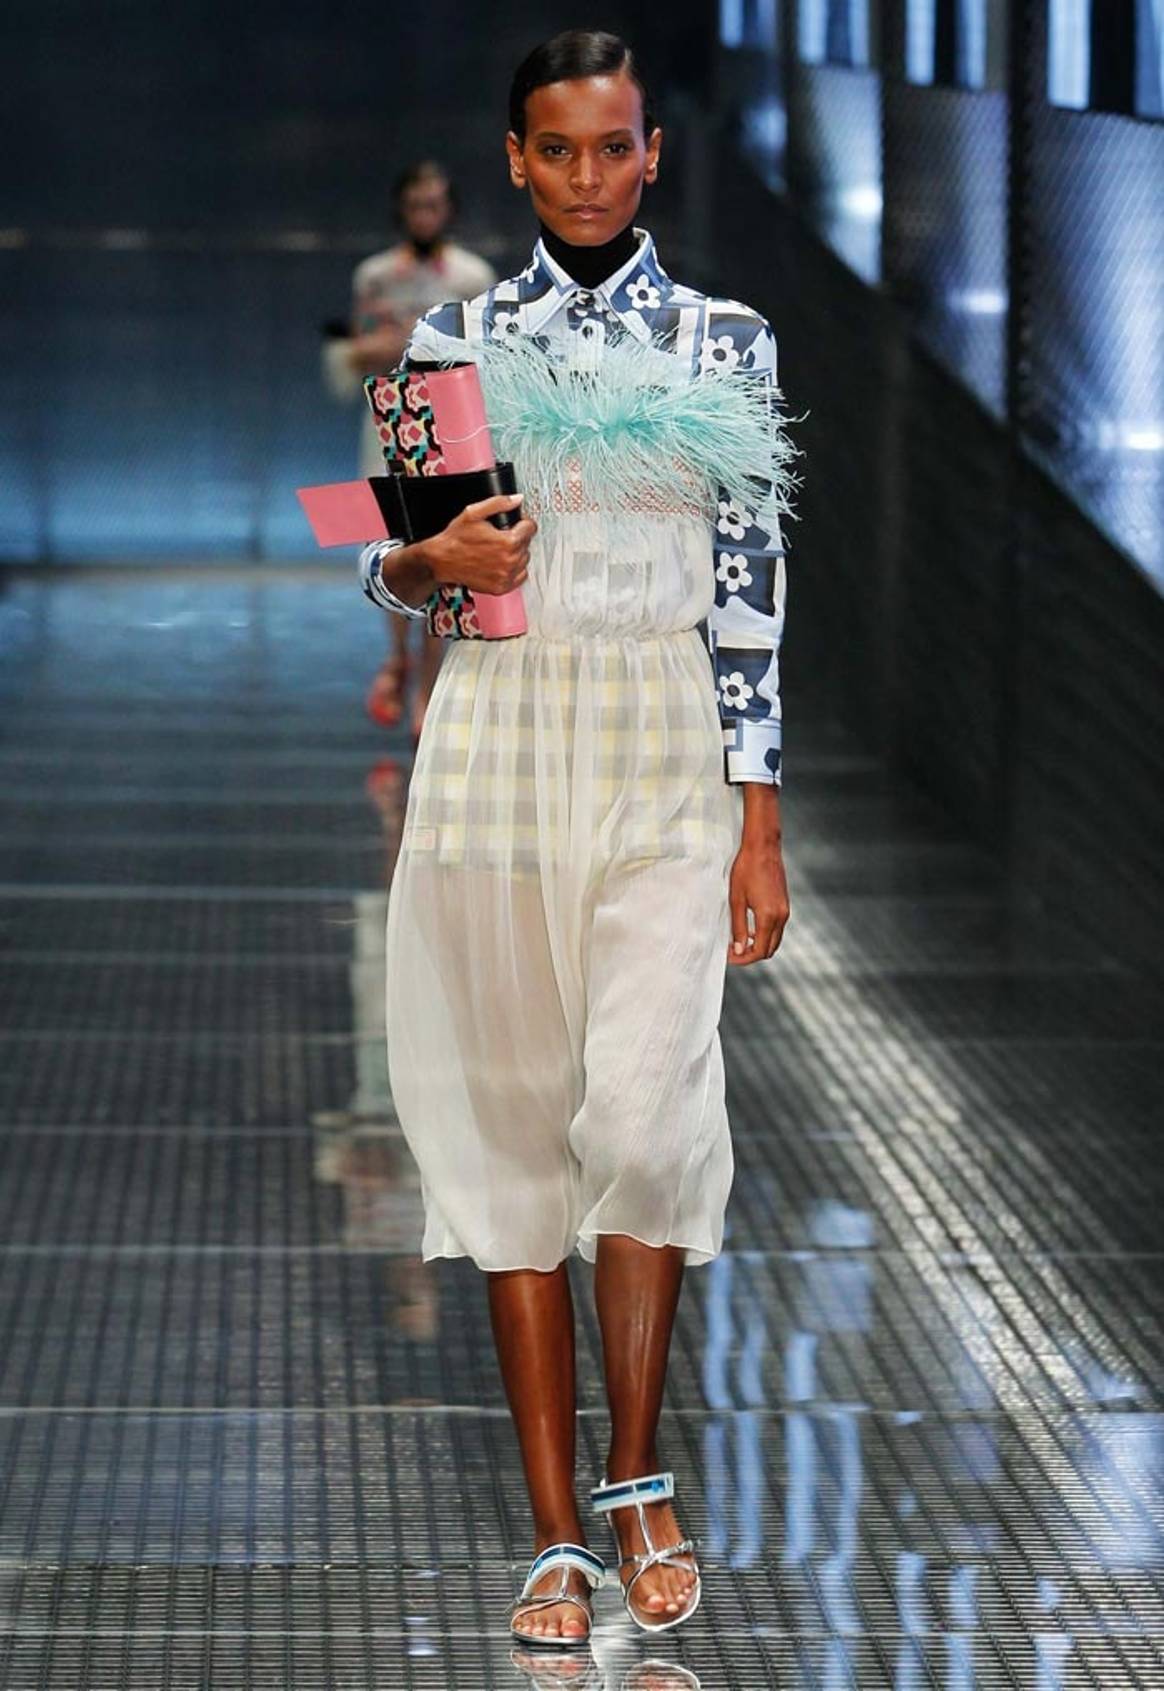 Milan Fashion Week: Prada SS17 review